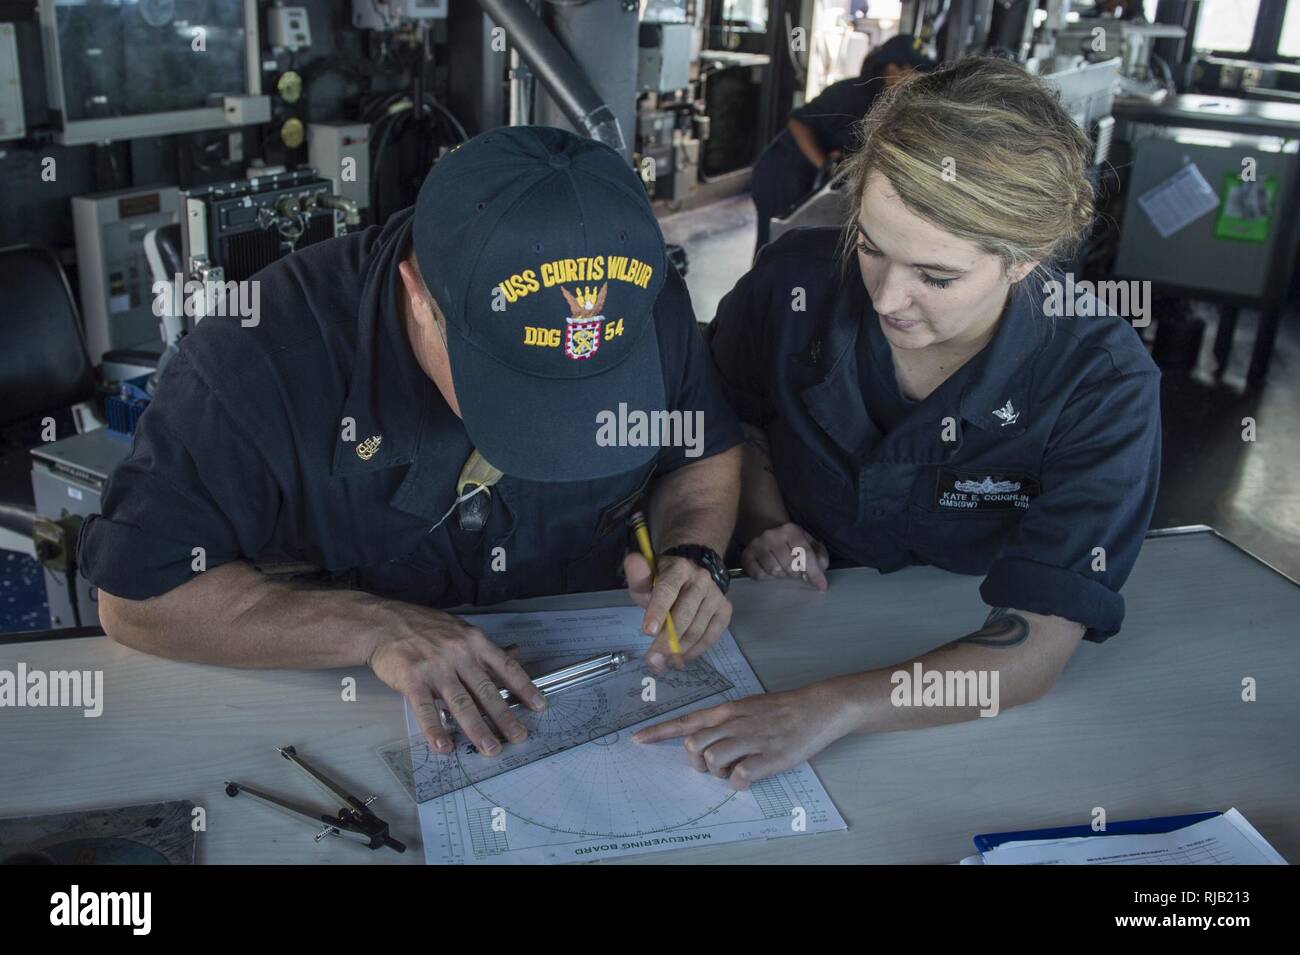 Philippinischen MEER (Nov. 2, 2016) Petty Officer 3rd Class Kate Coughlin, rechts, lehrt Senior Chief Petty Officer Jason Scott, Links, wie man richtig mit einem manövrieren Board stehend Quartiermeister der Uhr auf der Brücke der Arleigh-Burke-Klasse geführte Anti-raketen-Zerstörer USS Curtis Wilbur (DDG54). Curtis Wilbur ist auf Patrouille im philippinischen Meer Unterstützung der Sicherheit und Stabilität in der Indo-Asia-Pazifik-Region. Stockfoto